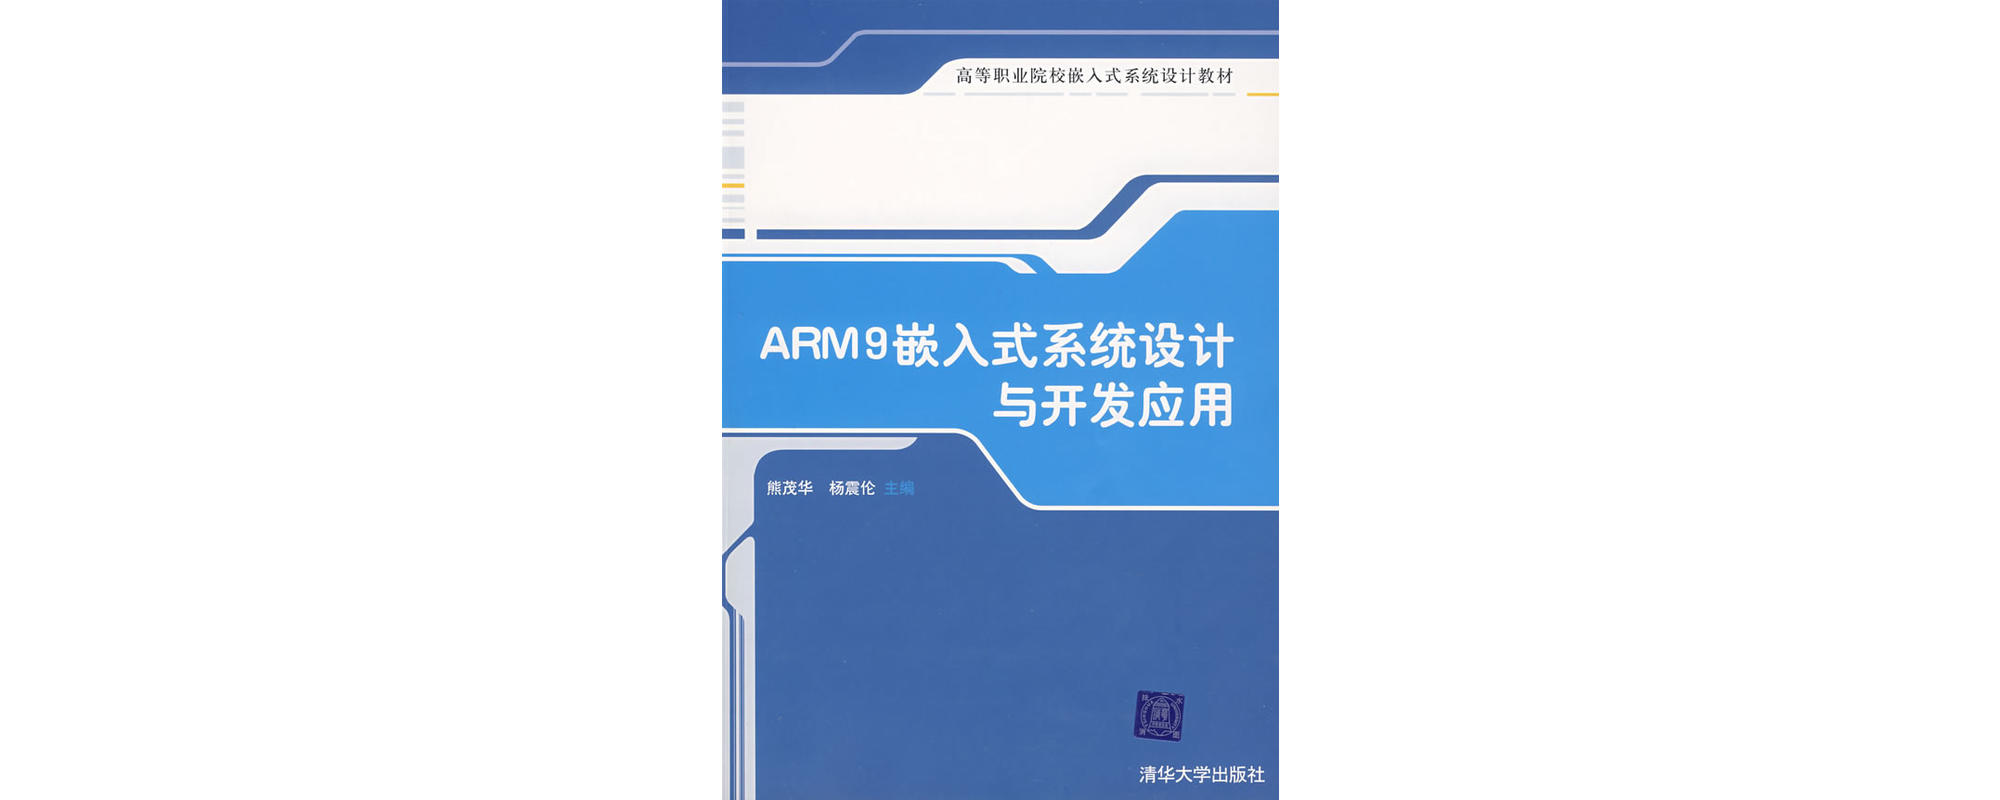 ARM9嵌入式系統設計與開發套用